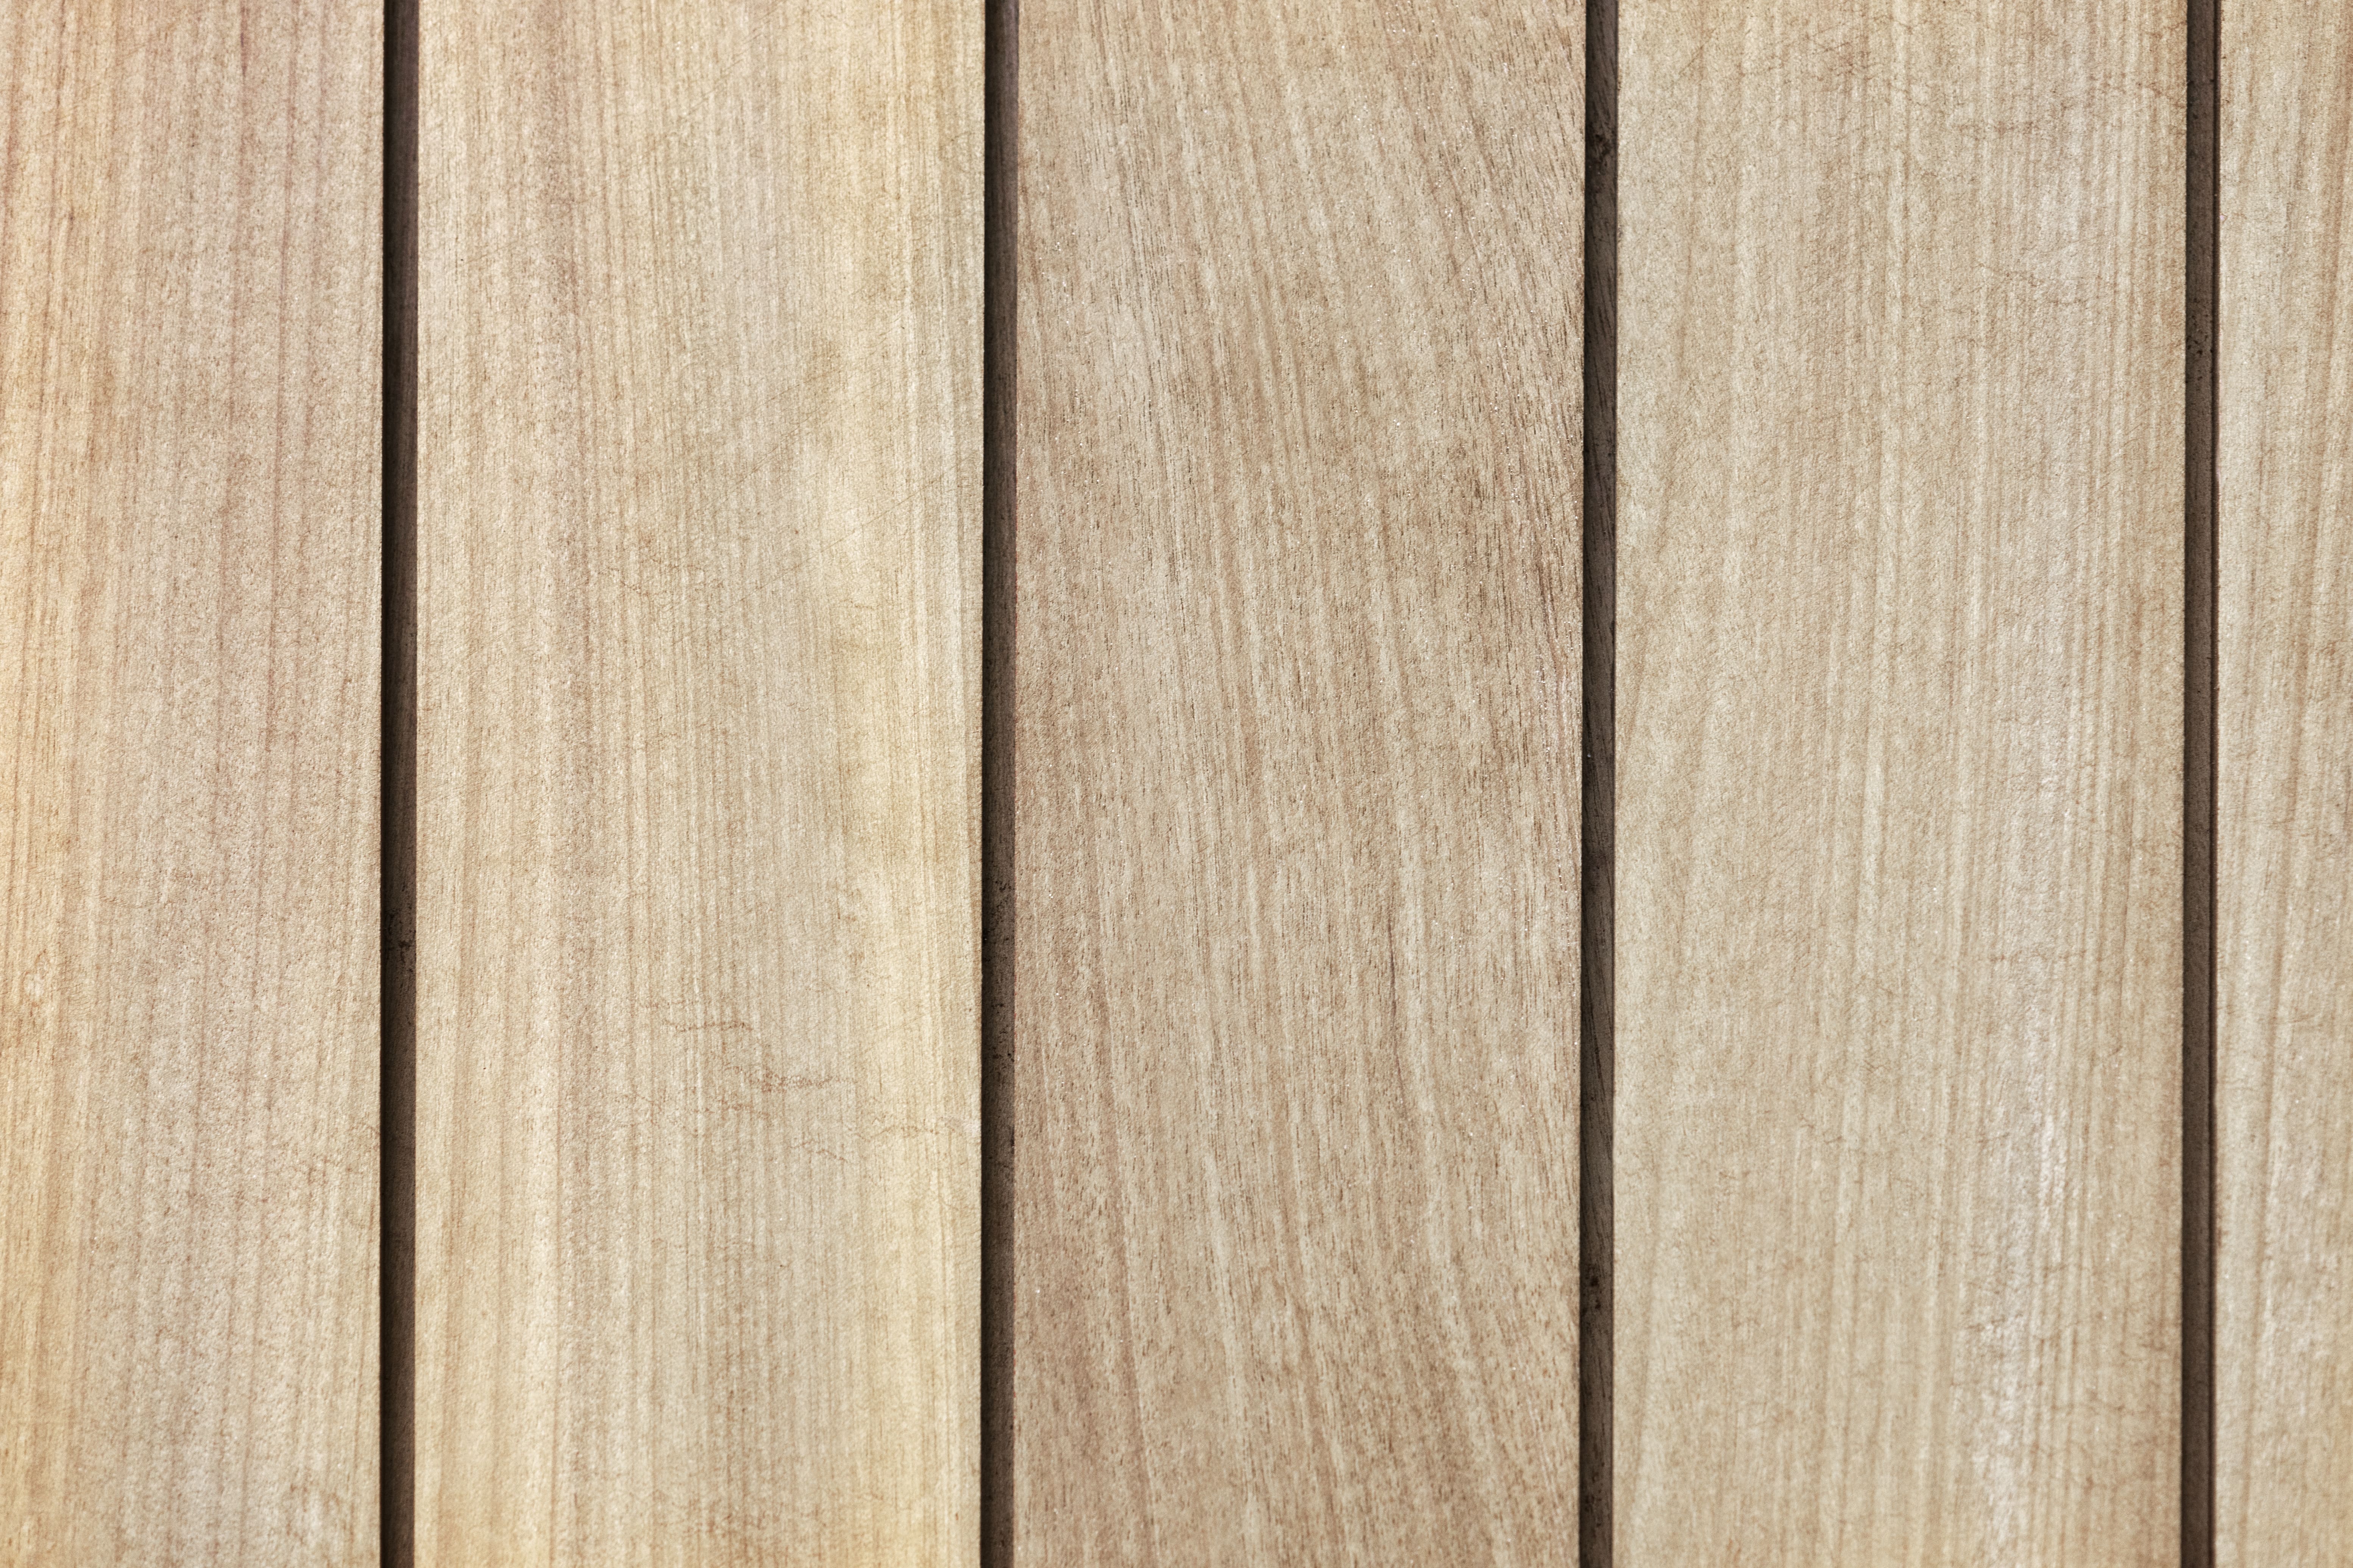 Le bois peuplier possède un esthétisme certain avec sa couleur blanc crème